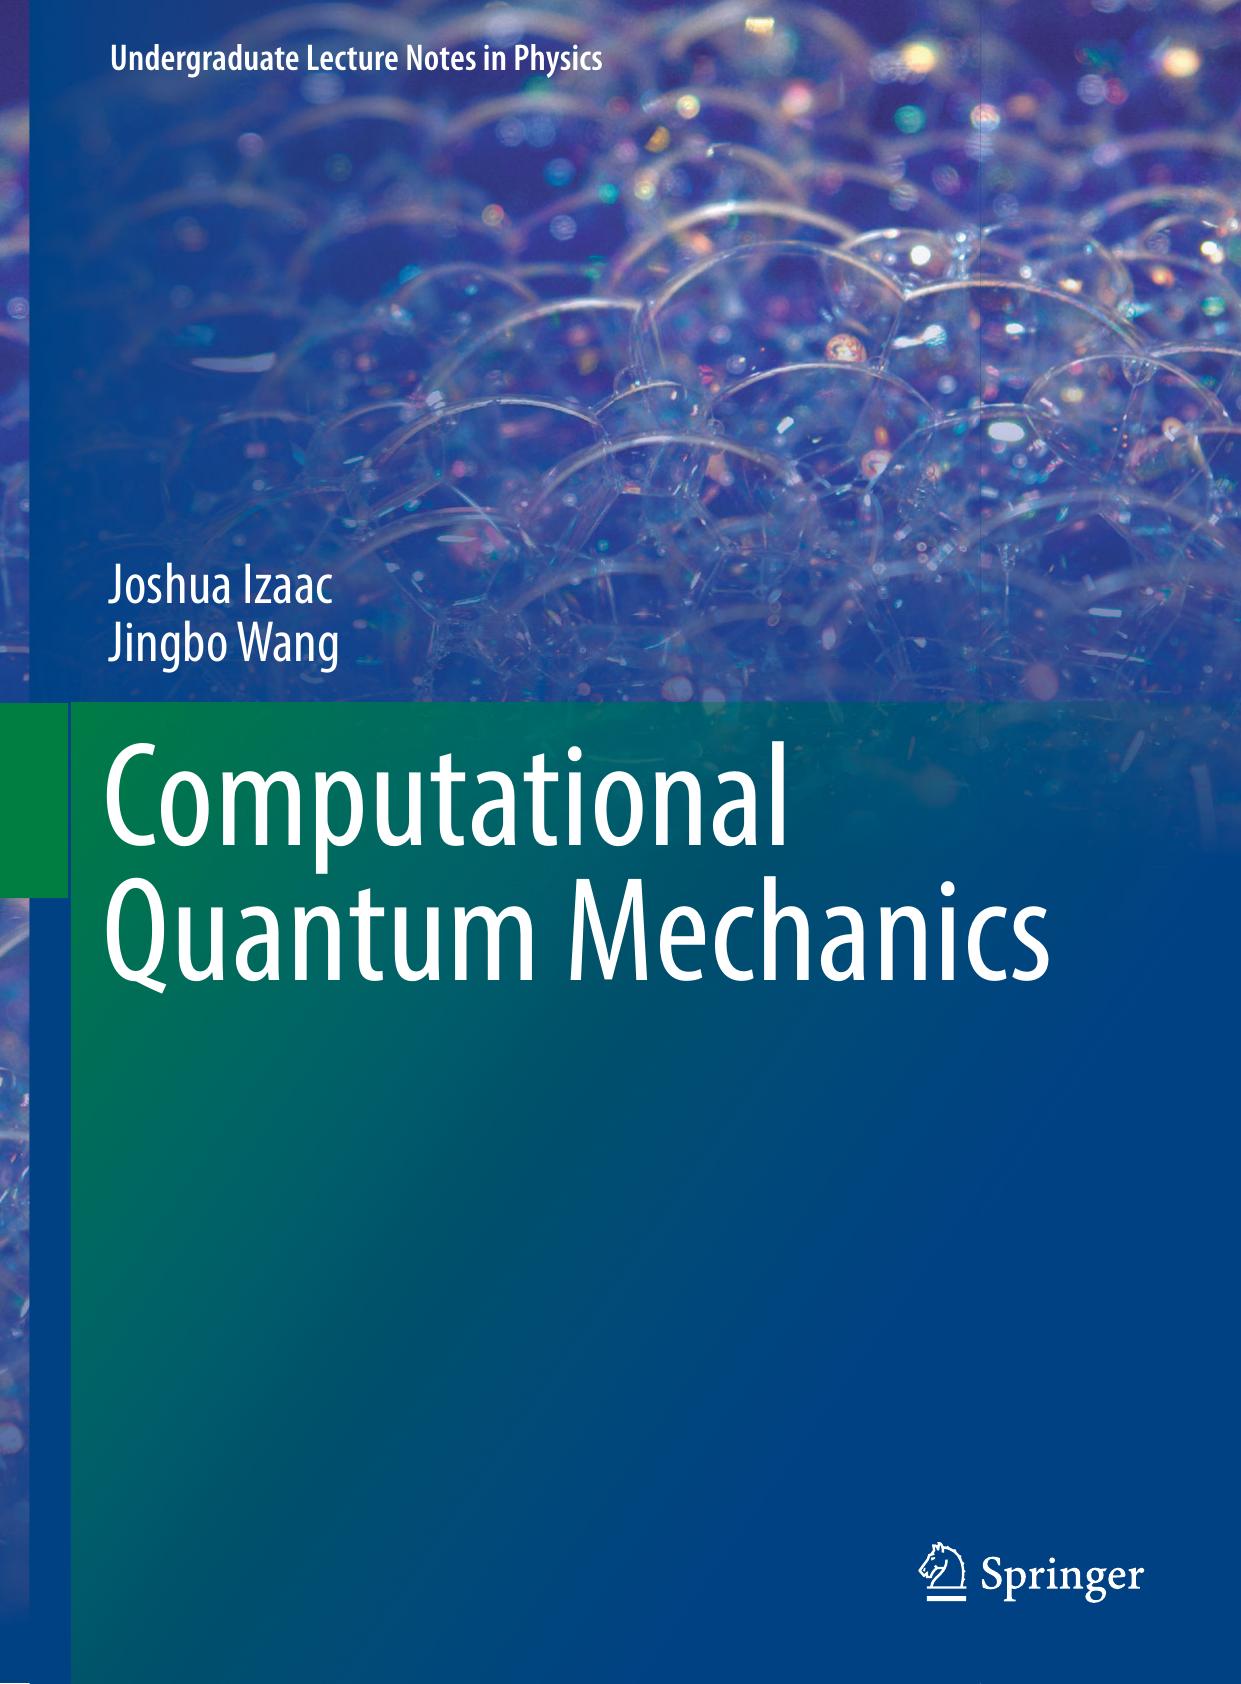 Computational Quantum Mechanics 2018 ( PDFDrive.com )